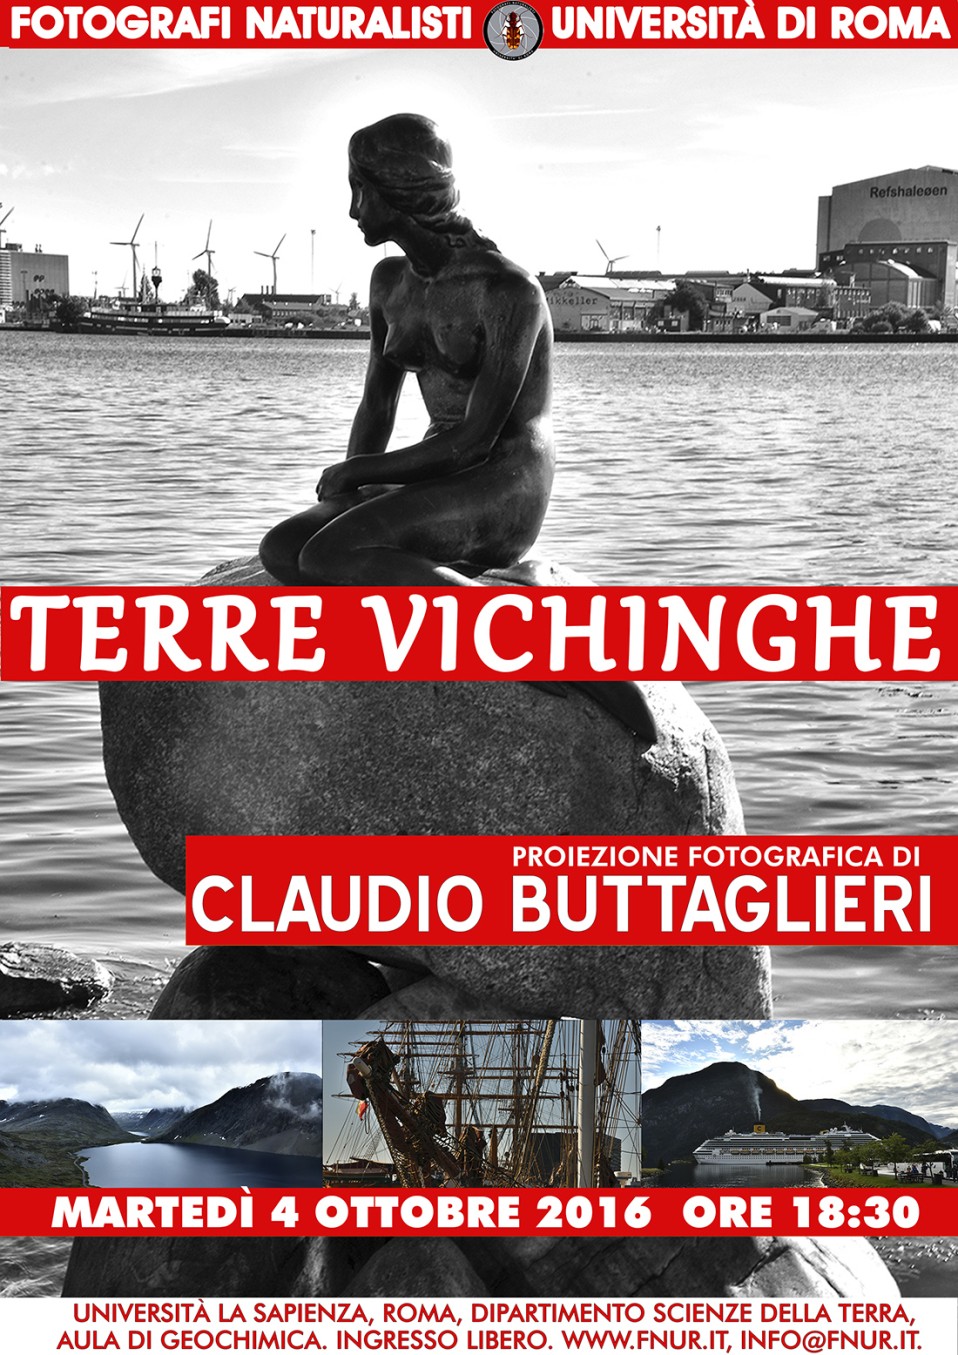 4 ottobre 2016 – Claudio Buttaglieri